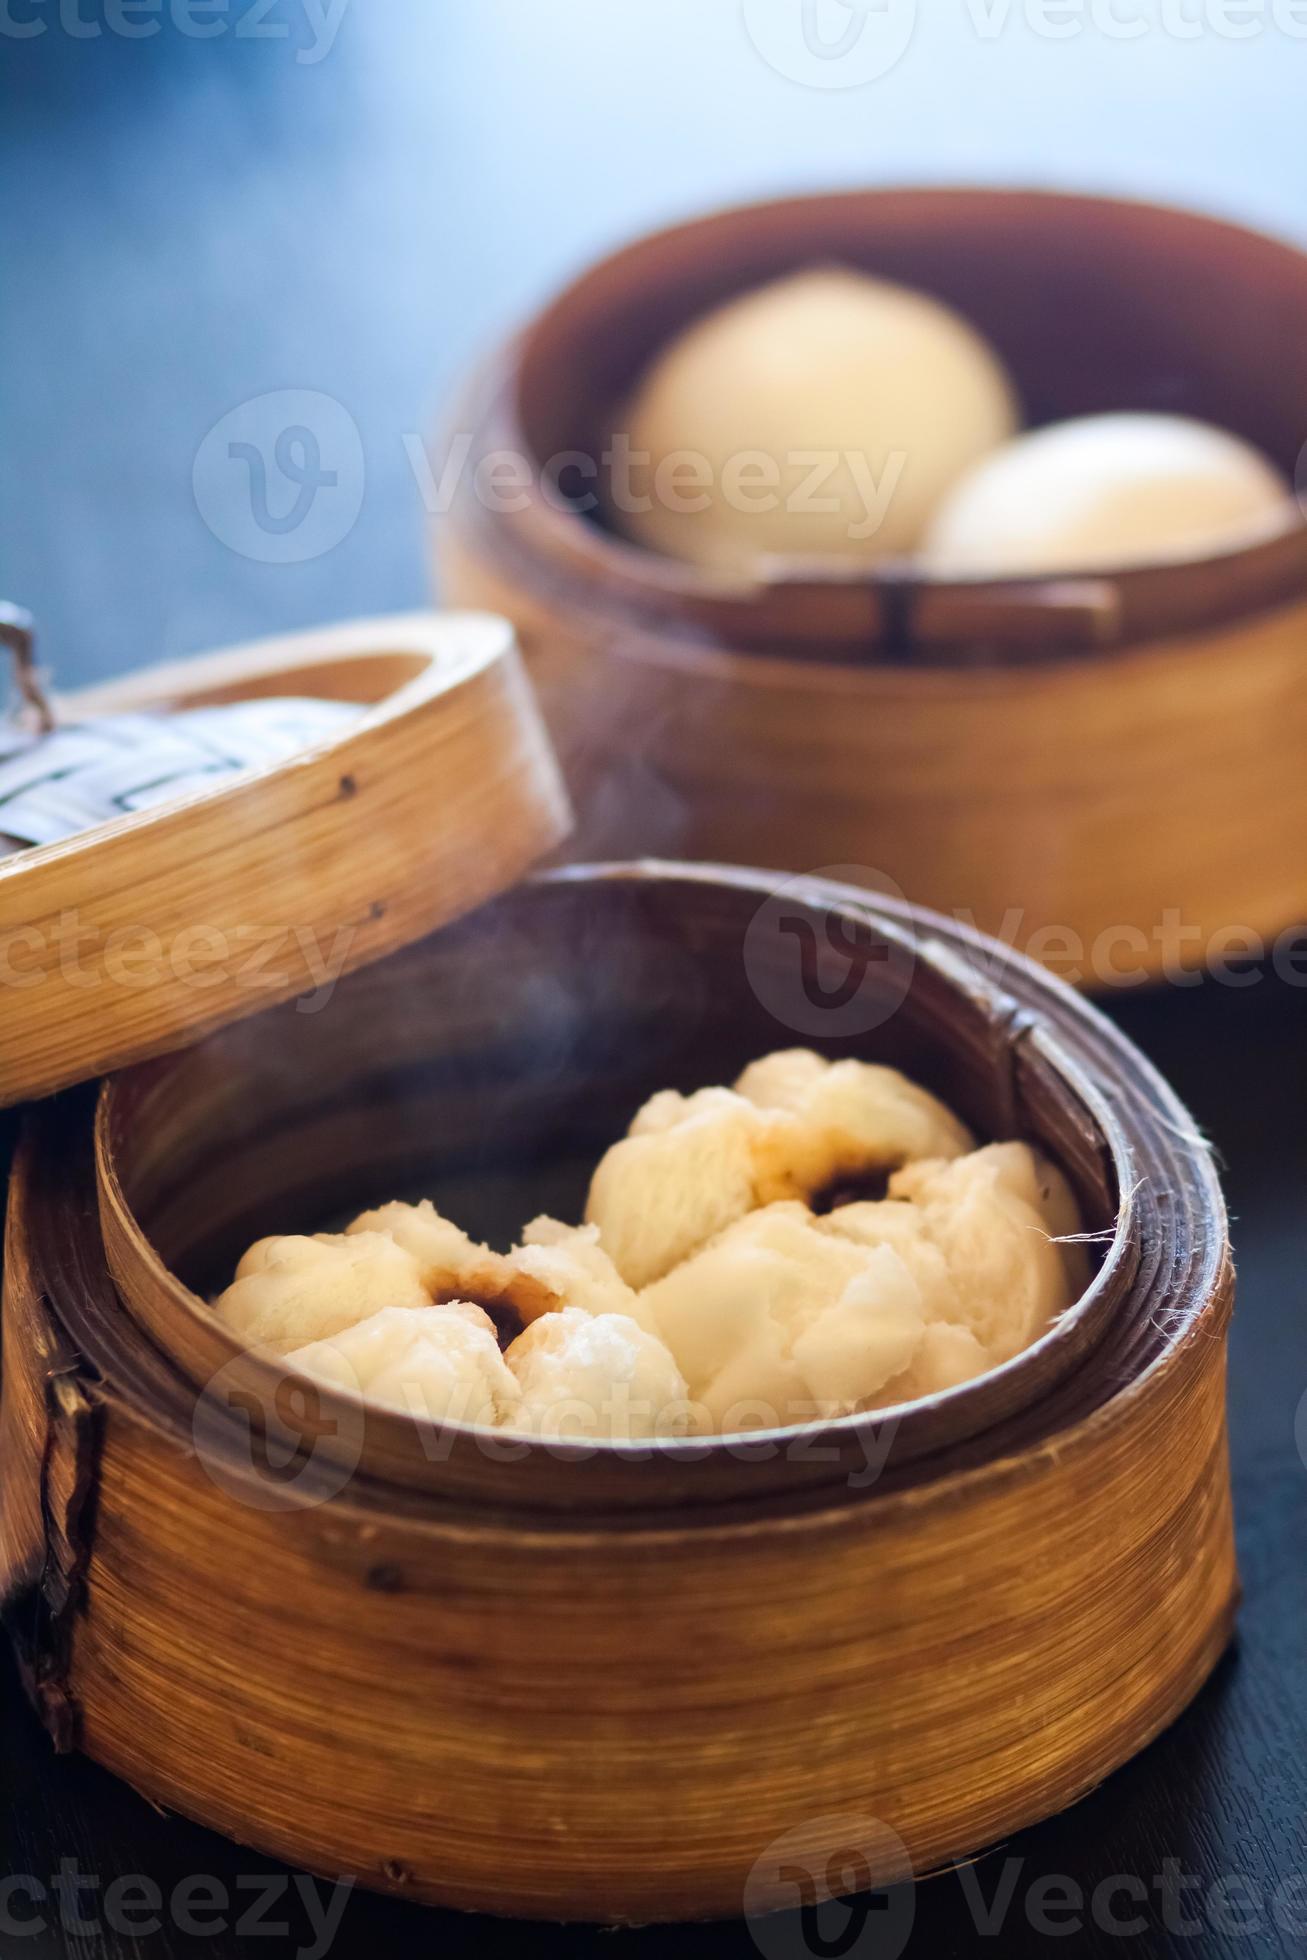 panini al vapore dim sum (gnocchi cinesi) foto